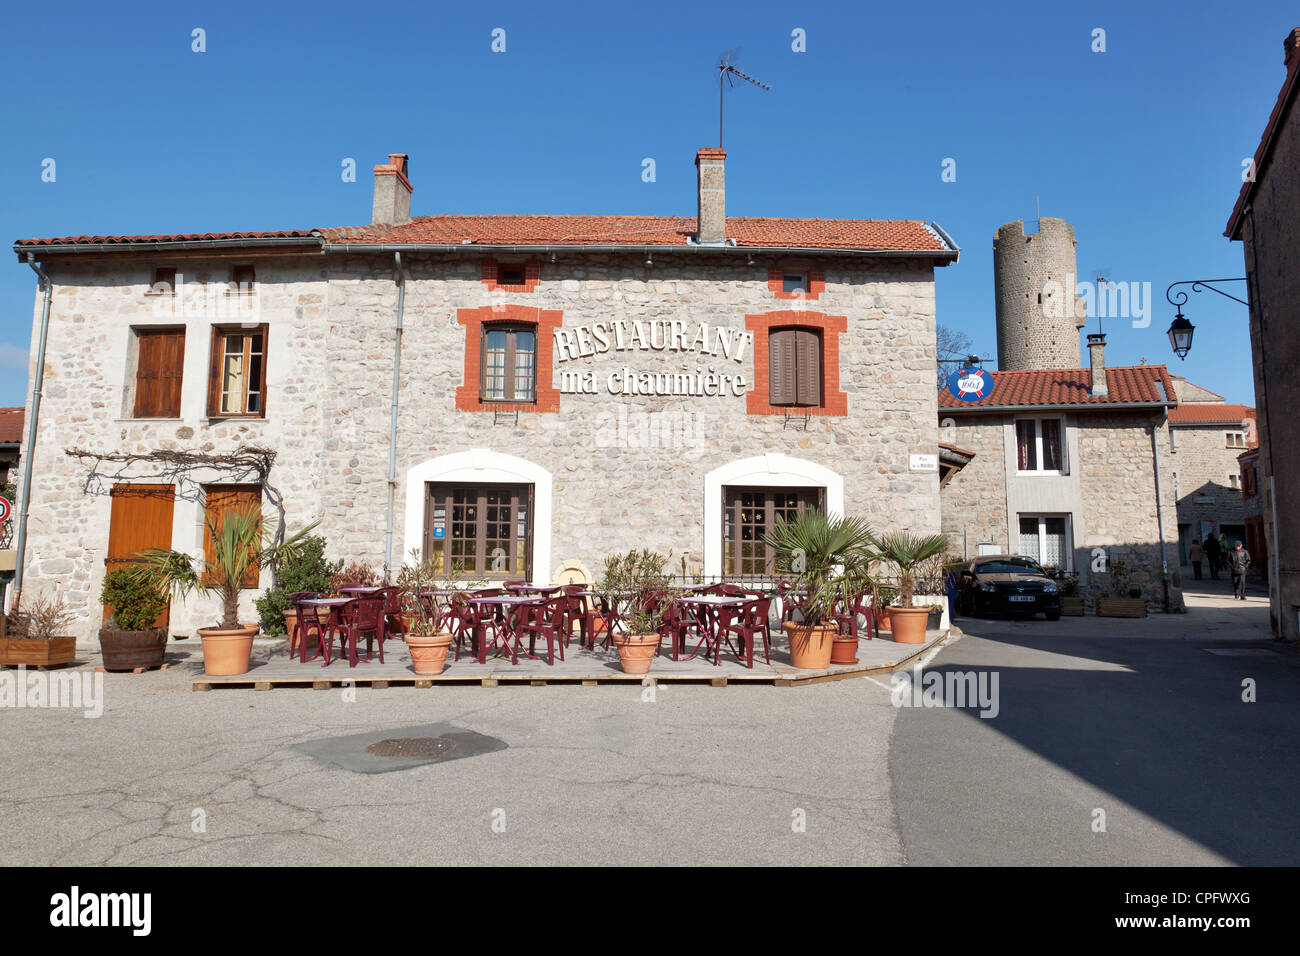 Ristorante ma chaumiere nel borgo medievale di Chambles vicino a Saint Etienne, Francia Foto Stock